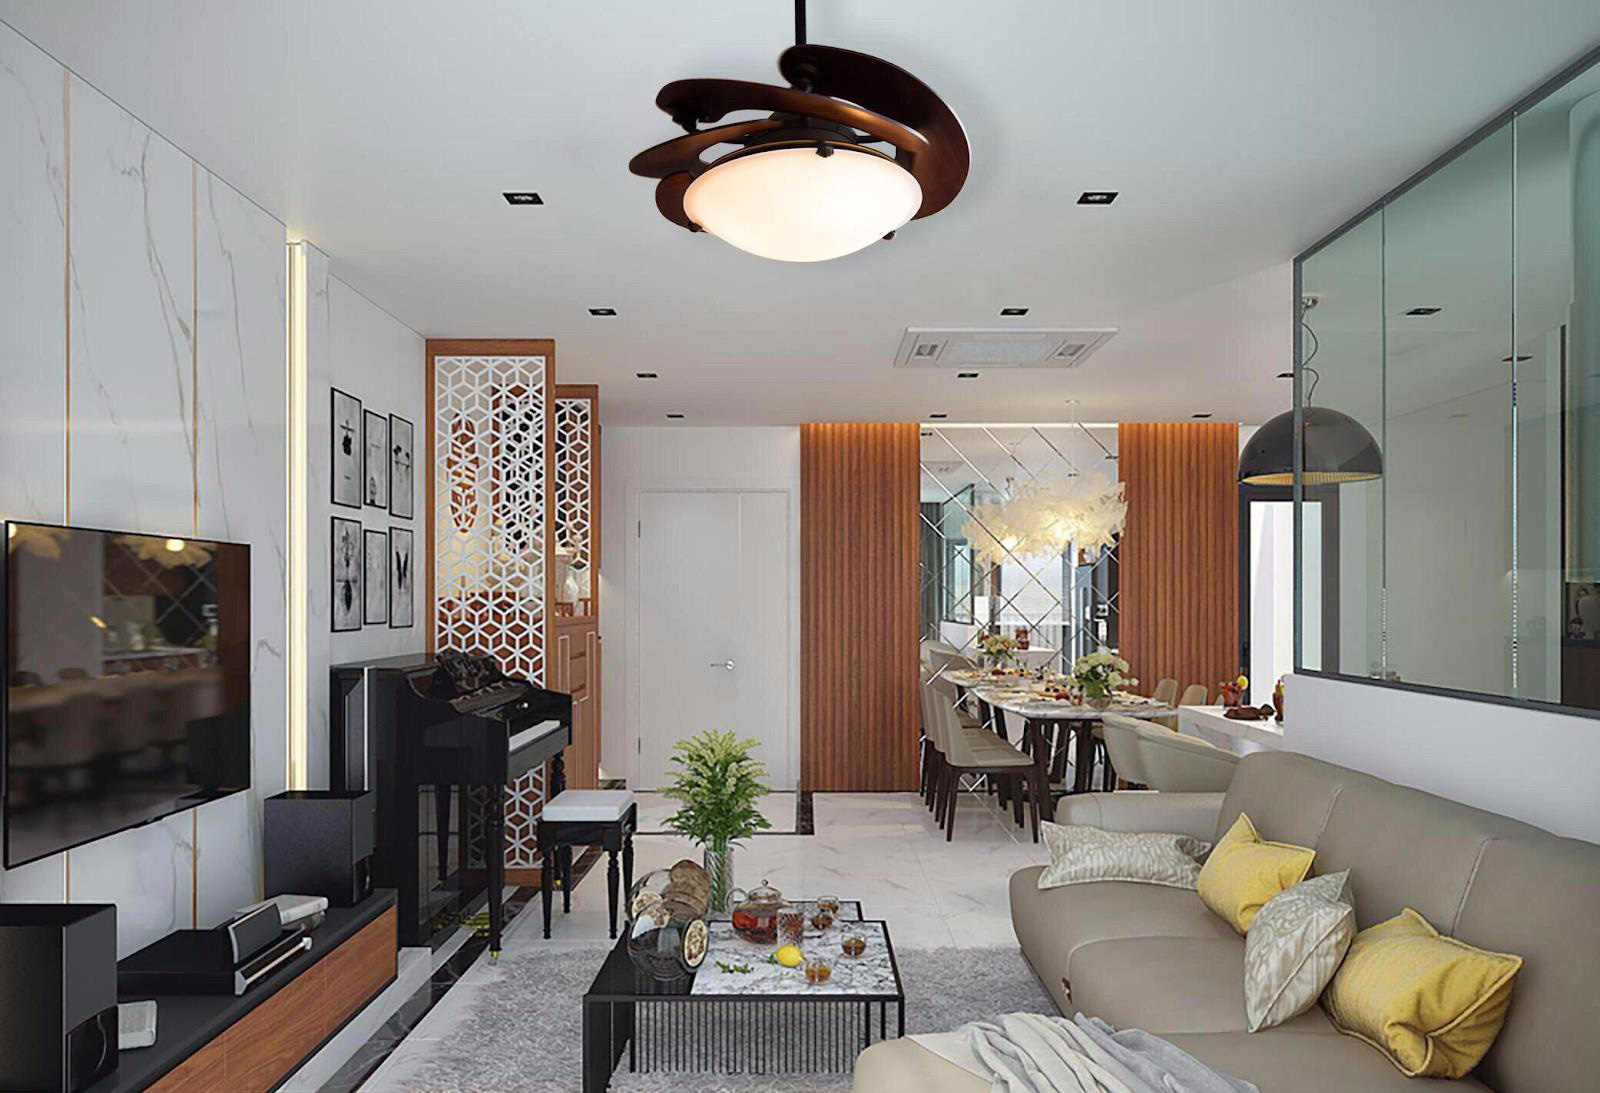 4-13 Quạt trần phòng khách mang đến không gian sống đẳng cấp cho gia chủ  thiết kế nhà đẹp Nghệ An